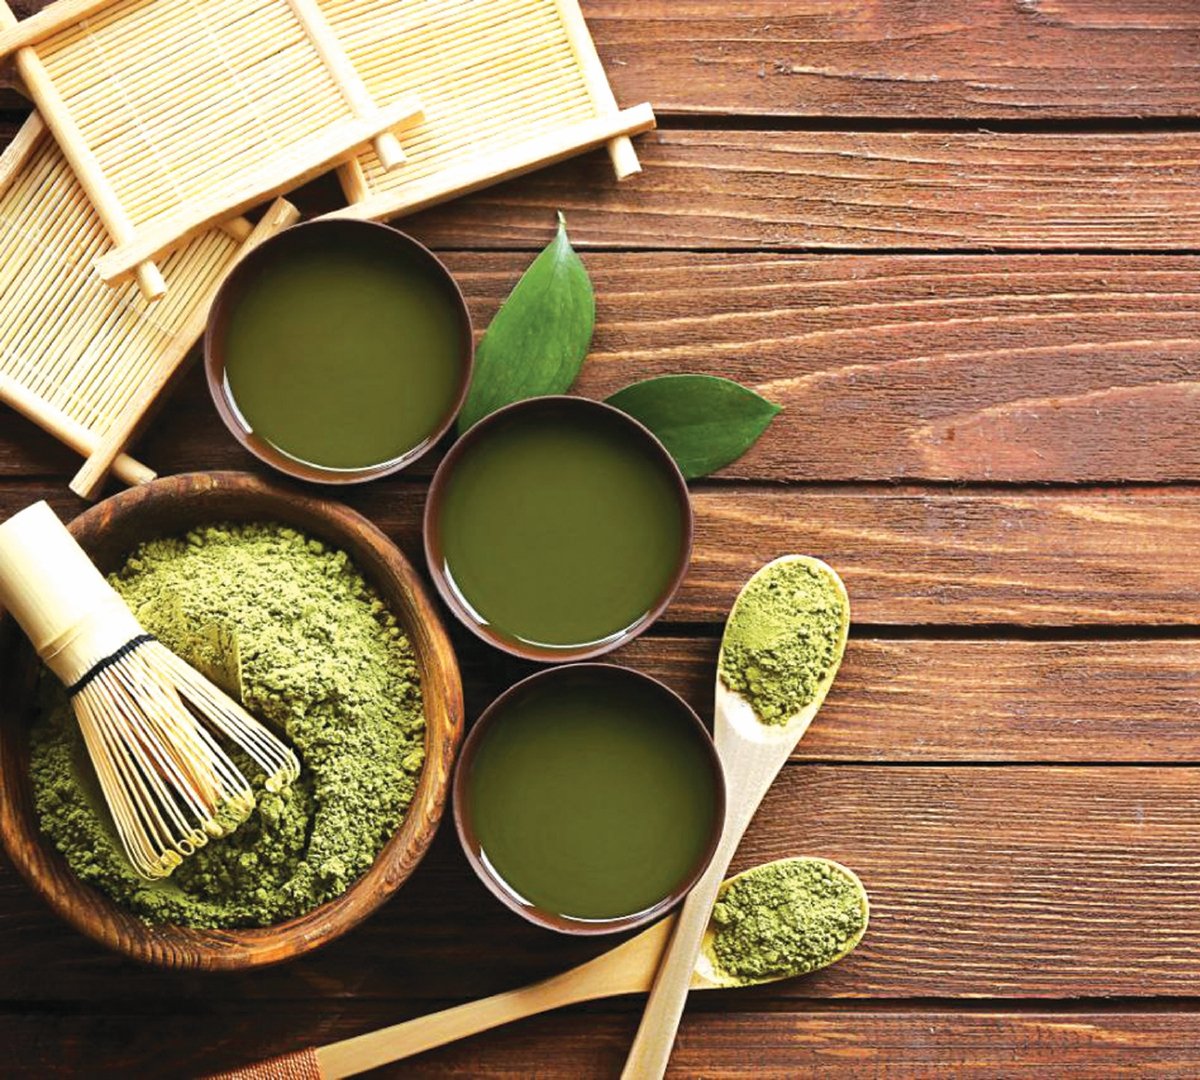 SERBUK teh hijau dicampur bersama pemutih telur dan beras kisar boleh jadi pupur muka. - FOTO Google